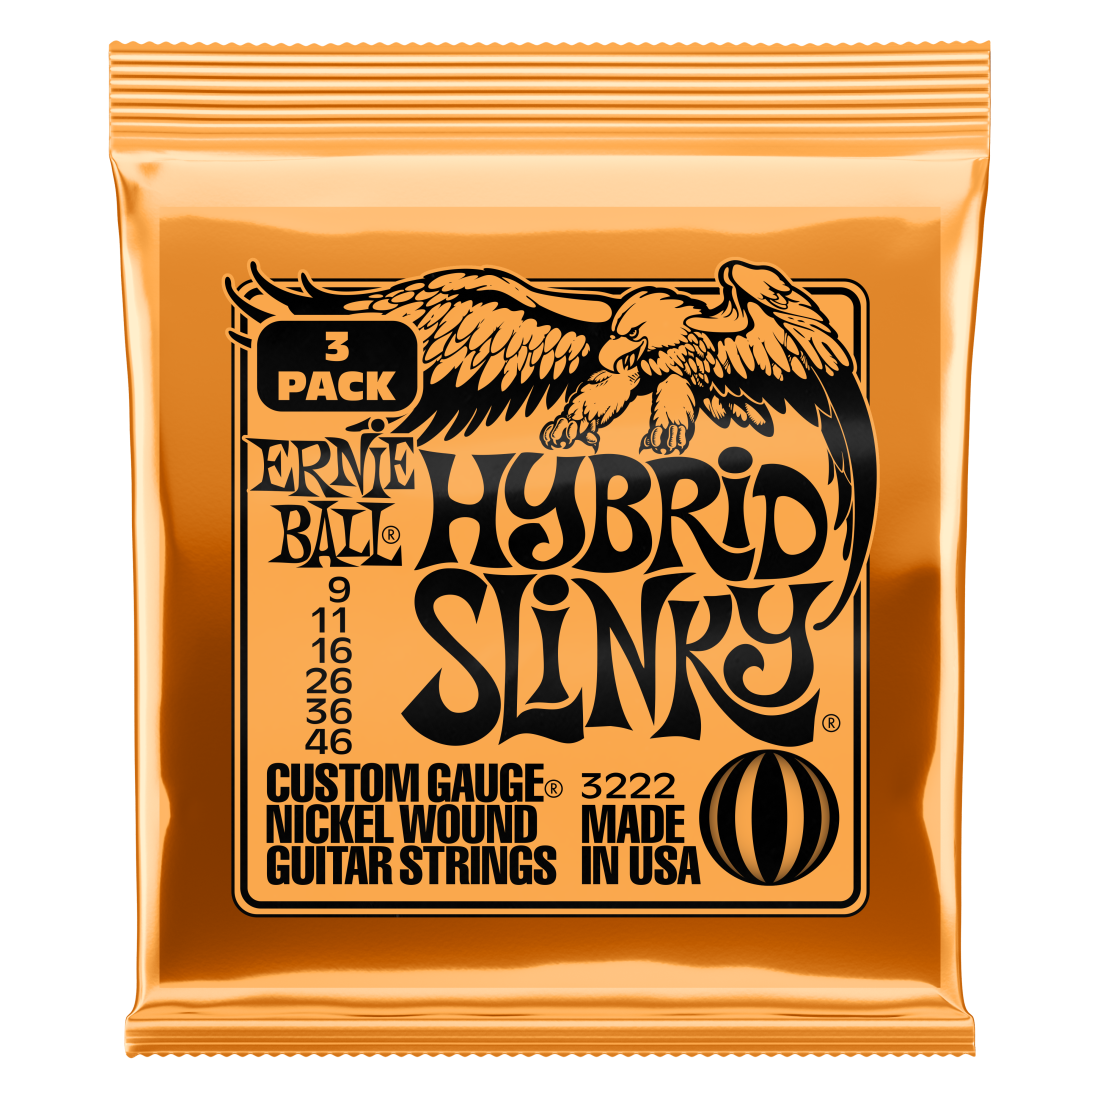 3-Pack Hybrid Slinky Electric Strings 9-46